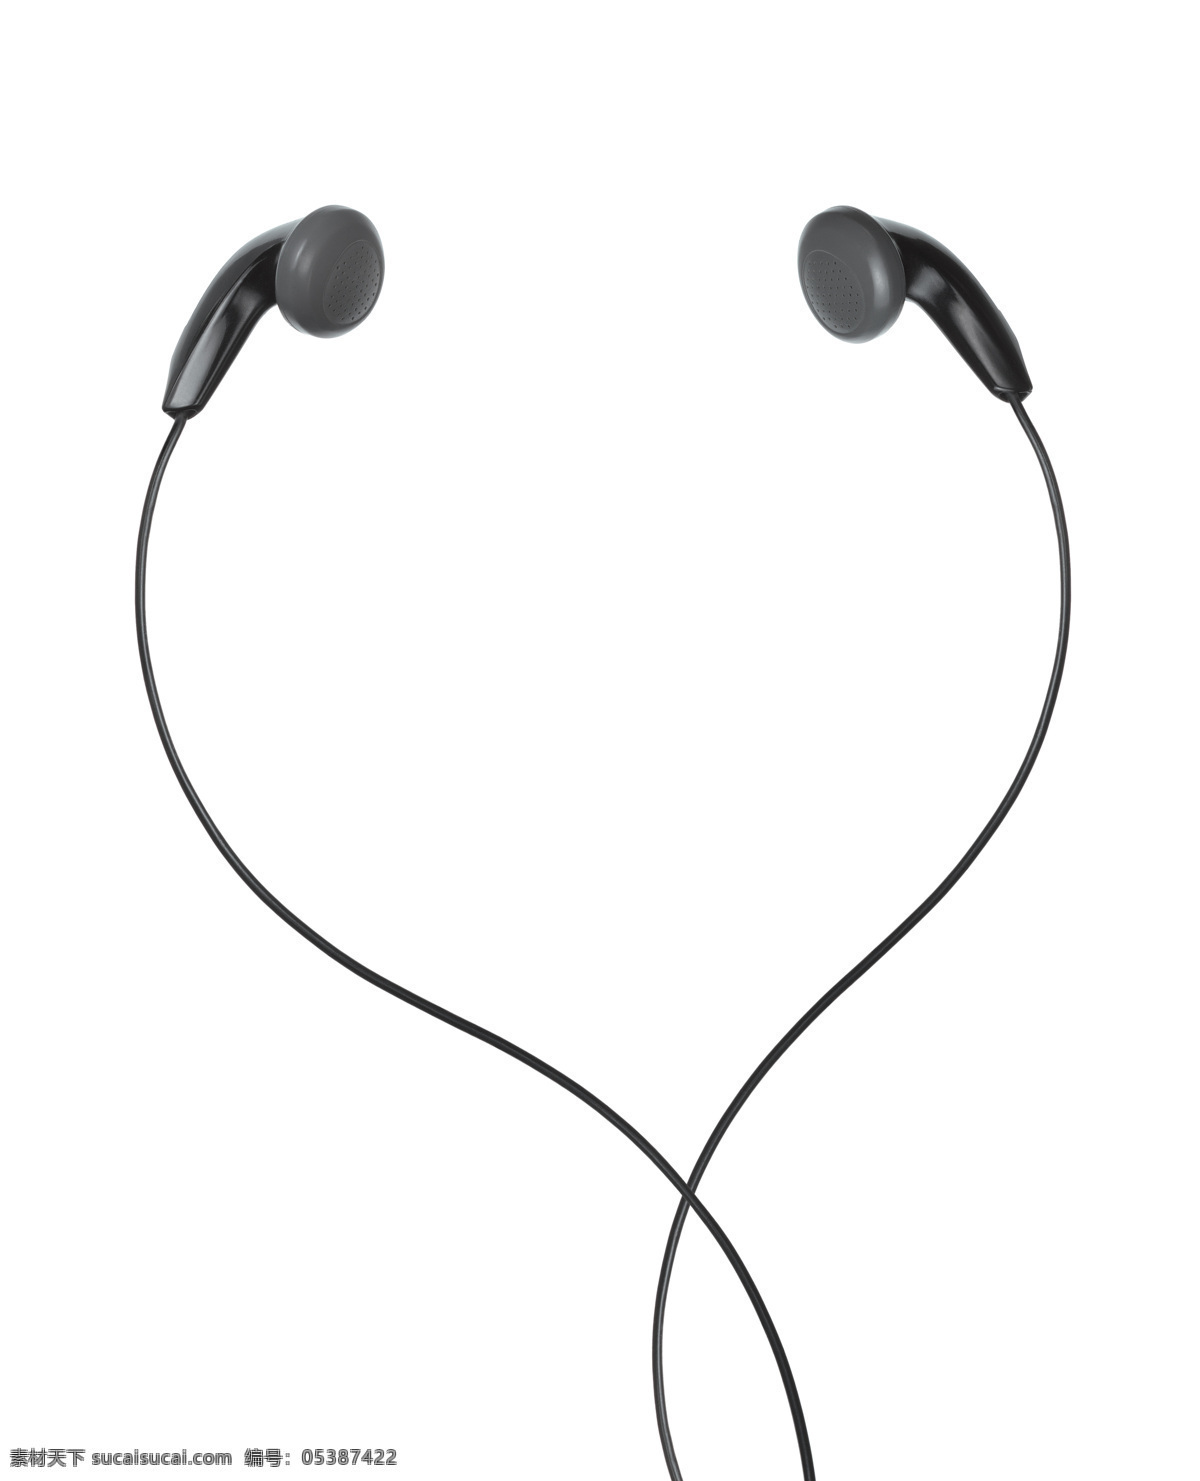 耳机 广告 素材图片 耳机摄影 耳机素材 生活用品 魔音耳机 音乐 耳机广告 其他类别 生活百科